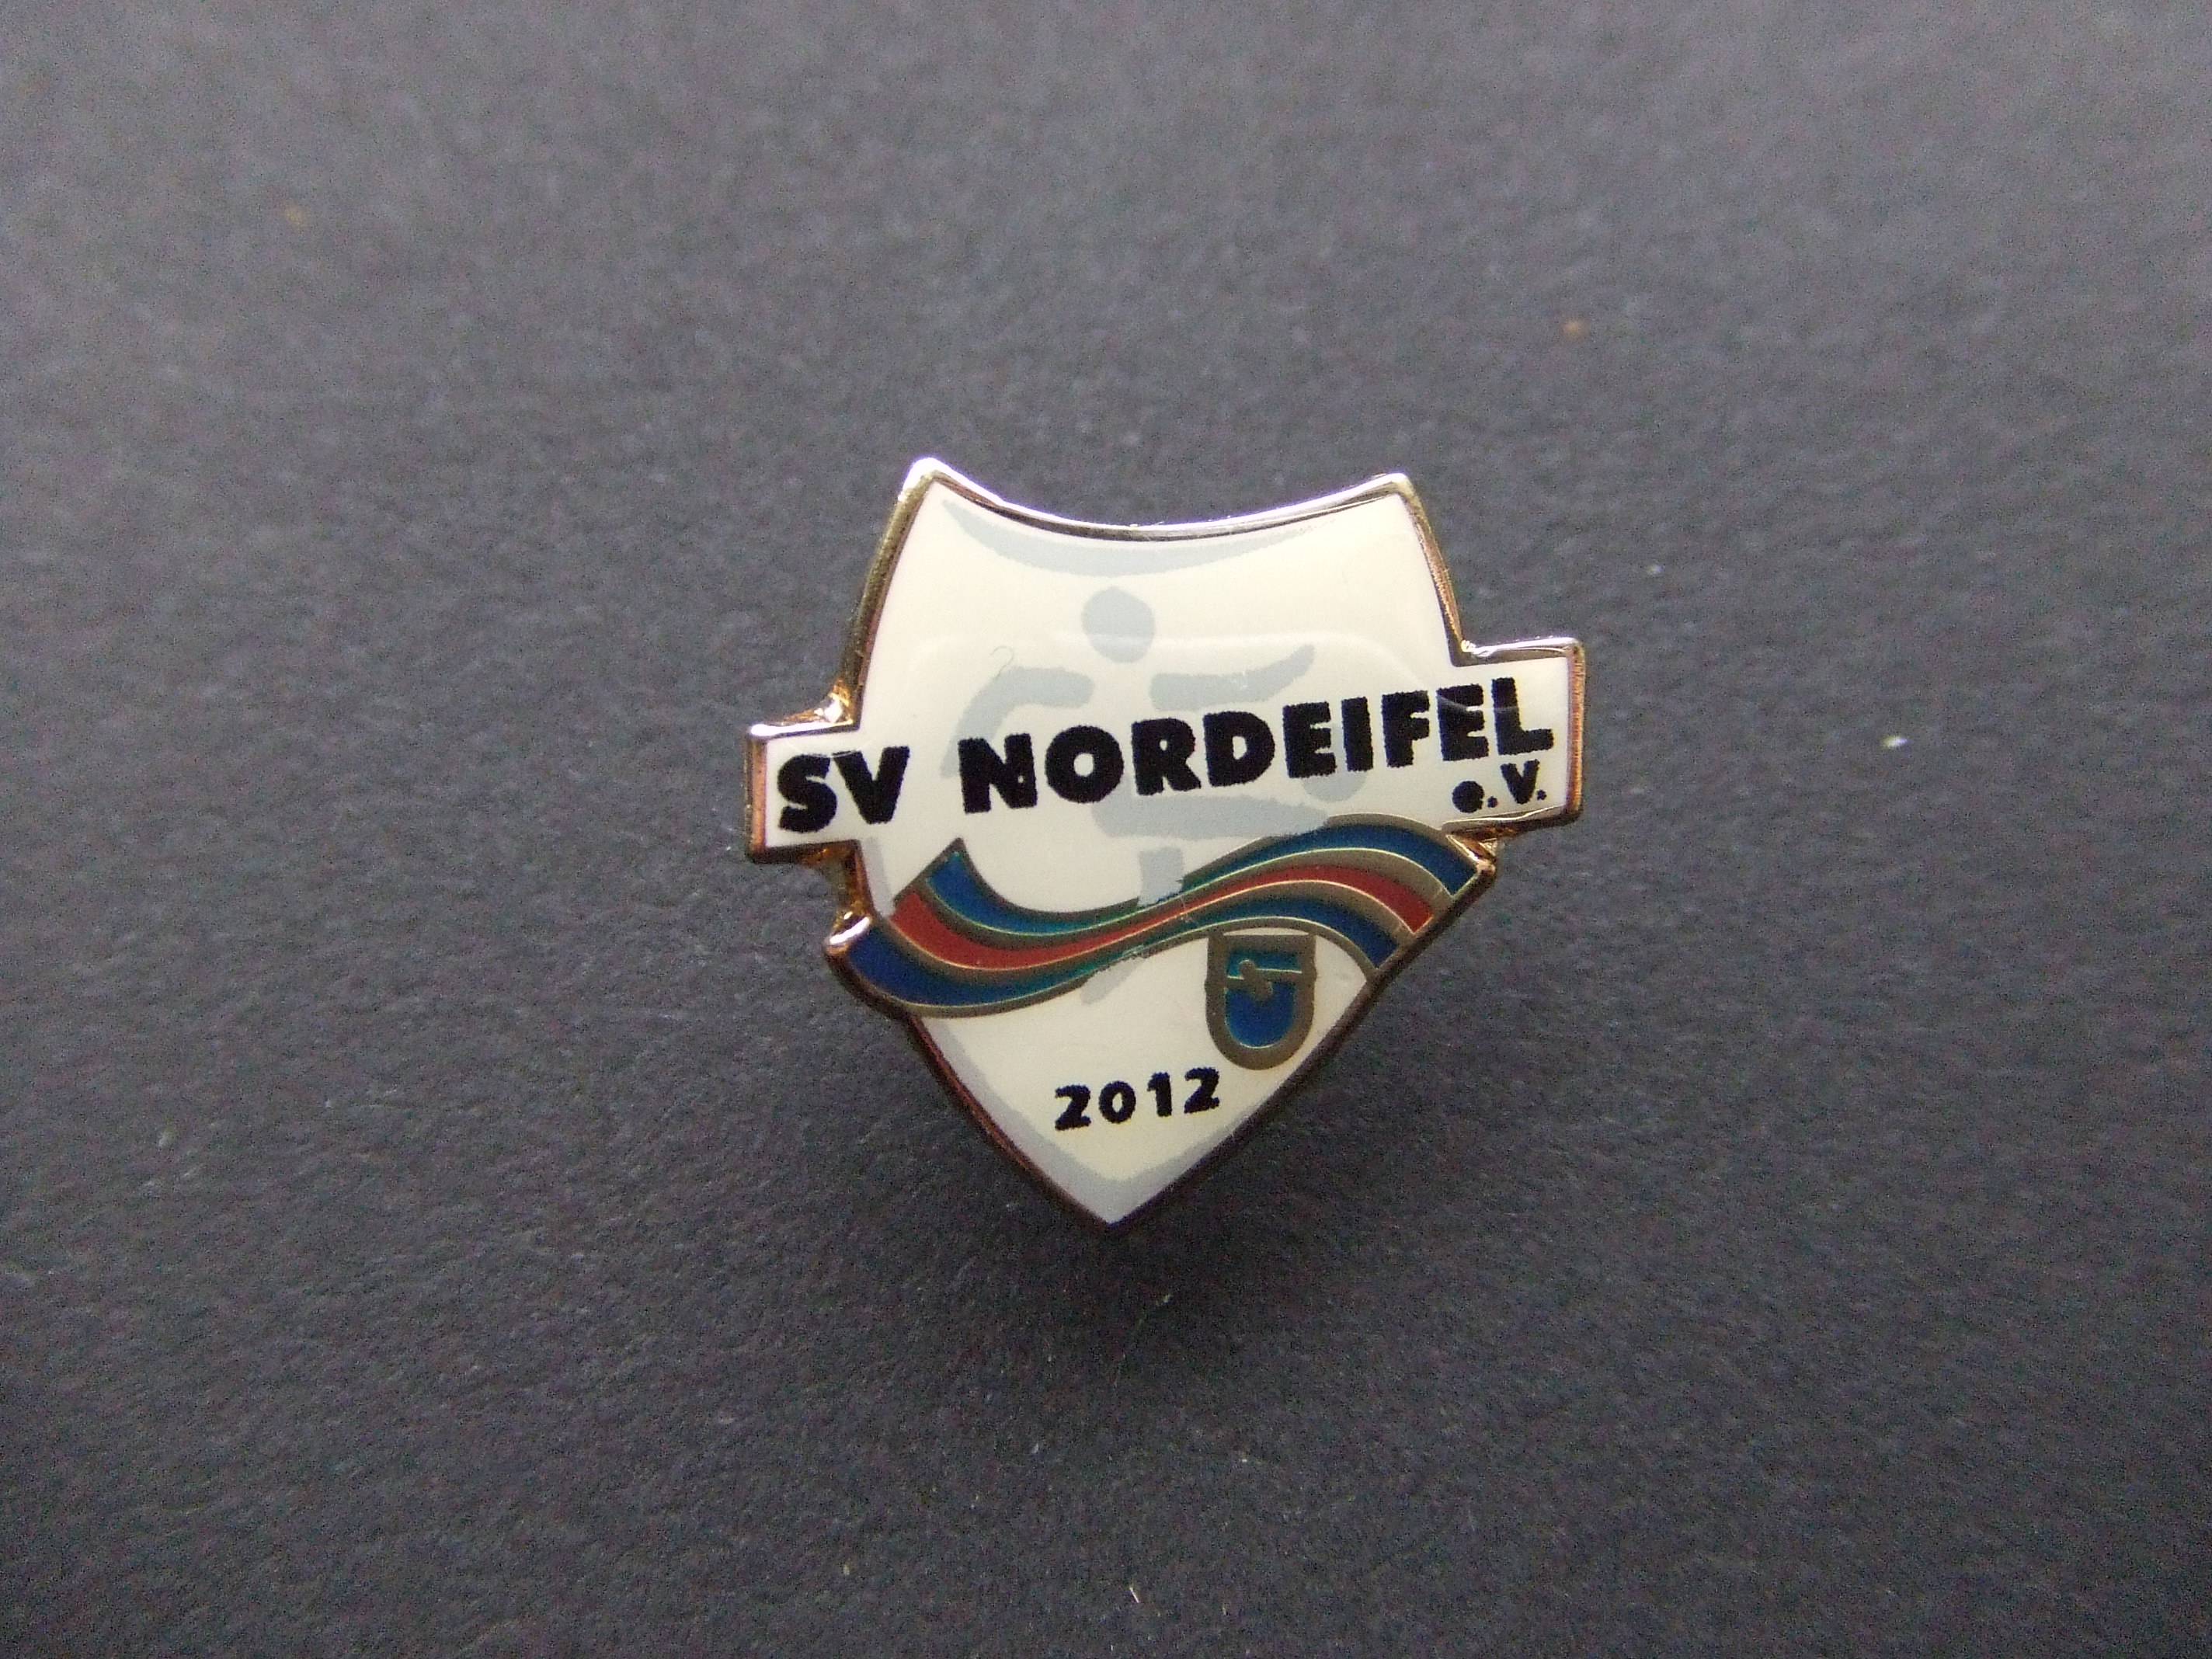 SV Nordeifel amateurvoetbalclub Duitsland